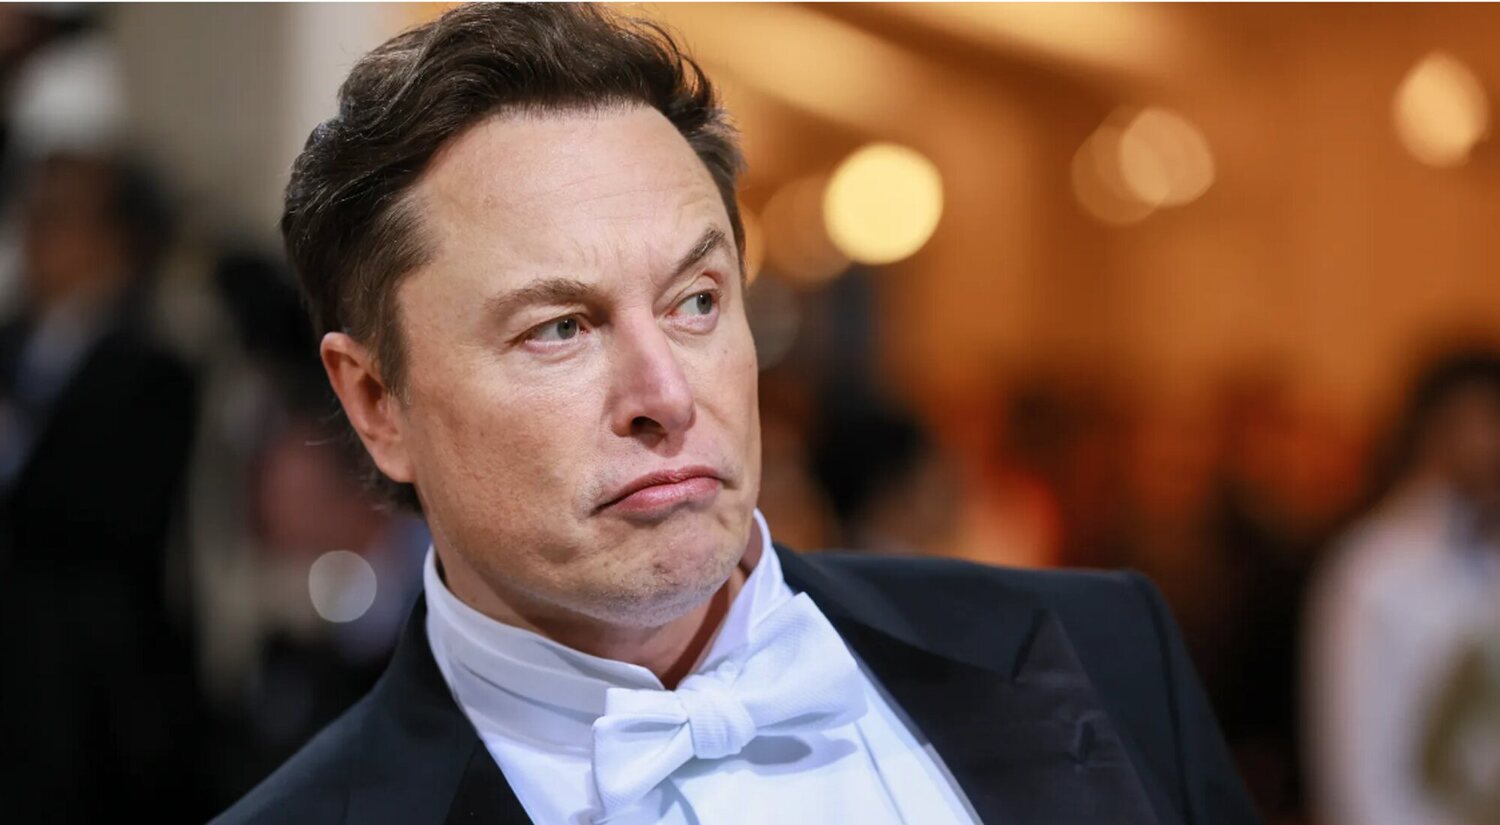 ¿Qué pasará con Elon Musk tras su debacle con Twitter?